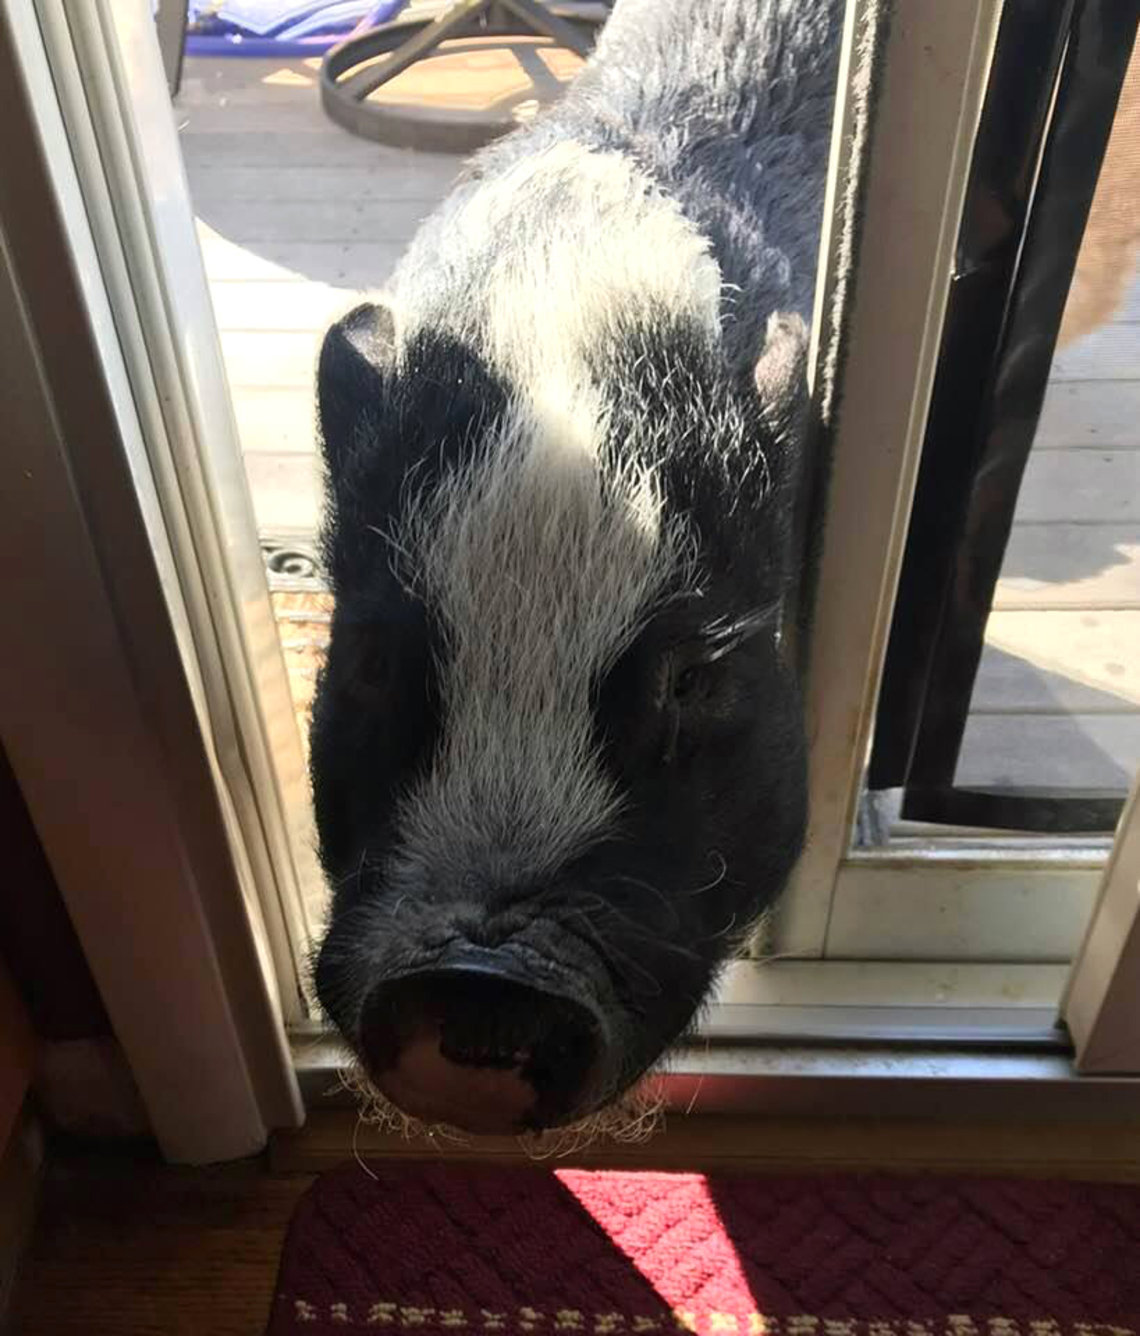 A pig walks through a sliding glass door opening